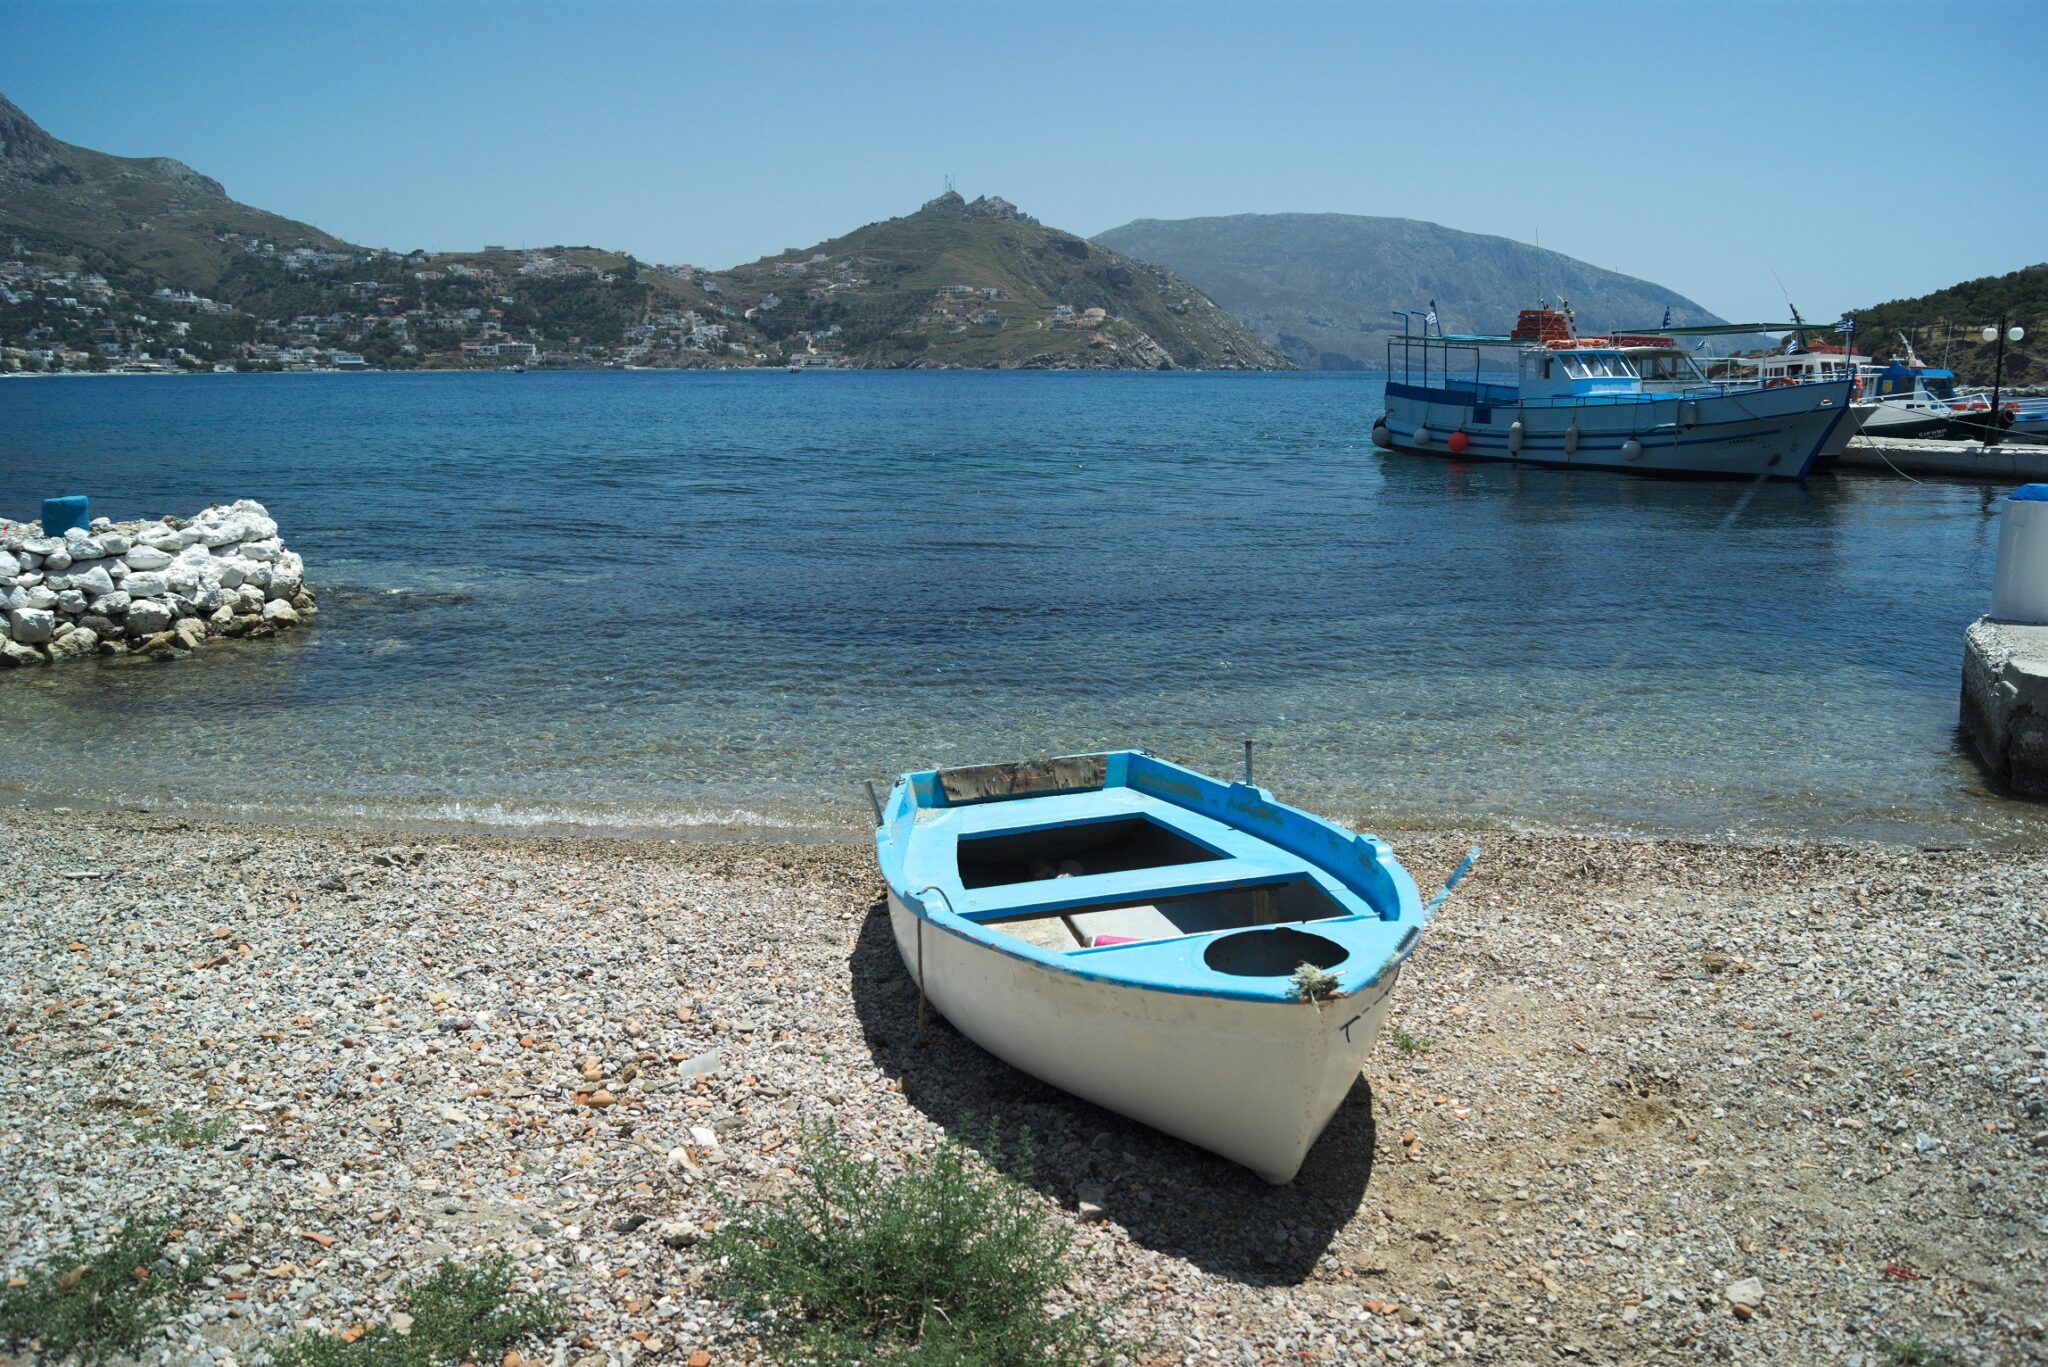 Τέλενδος: Το νησάκι των Δωδεκανήσων όπου θα πάτε μόνο με θαλάσσιο ταξί| travel.gr